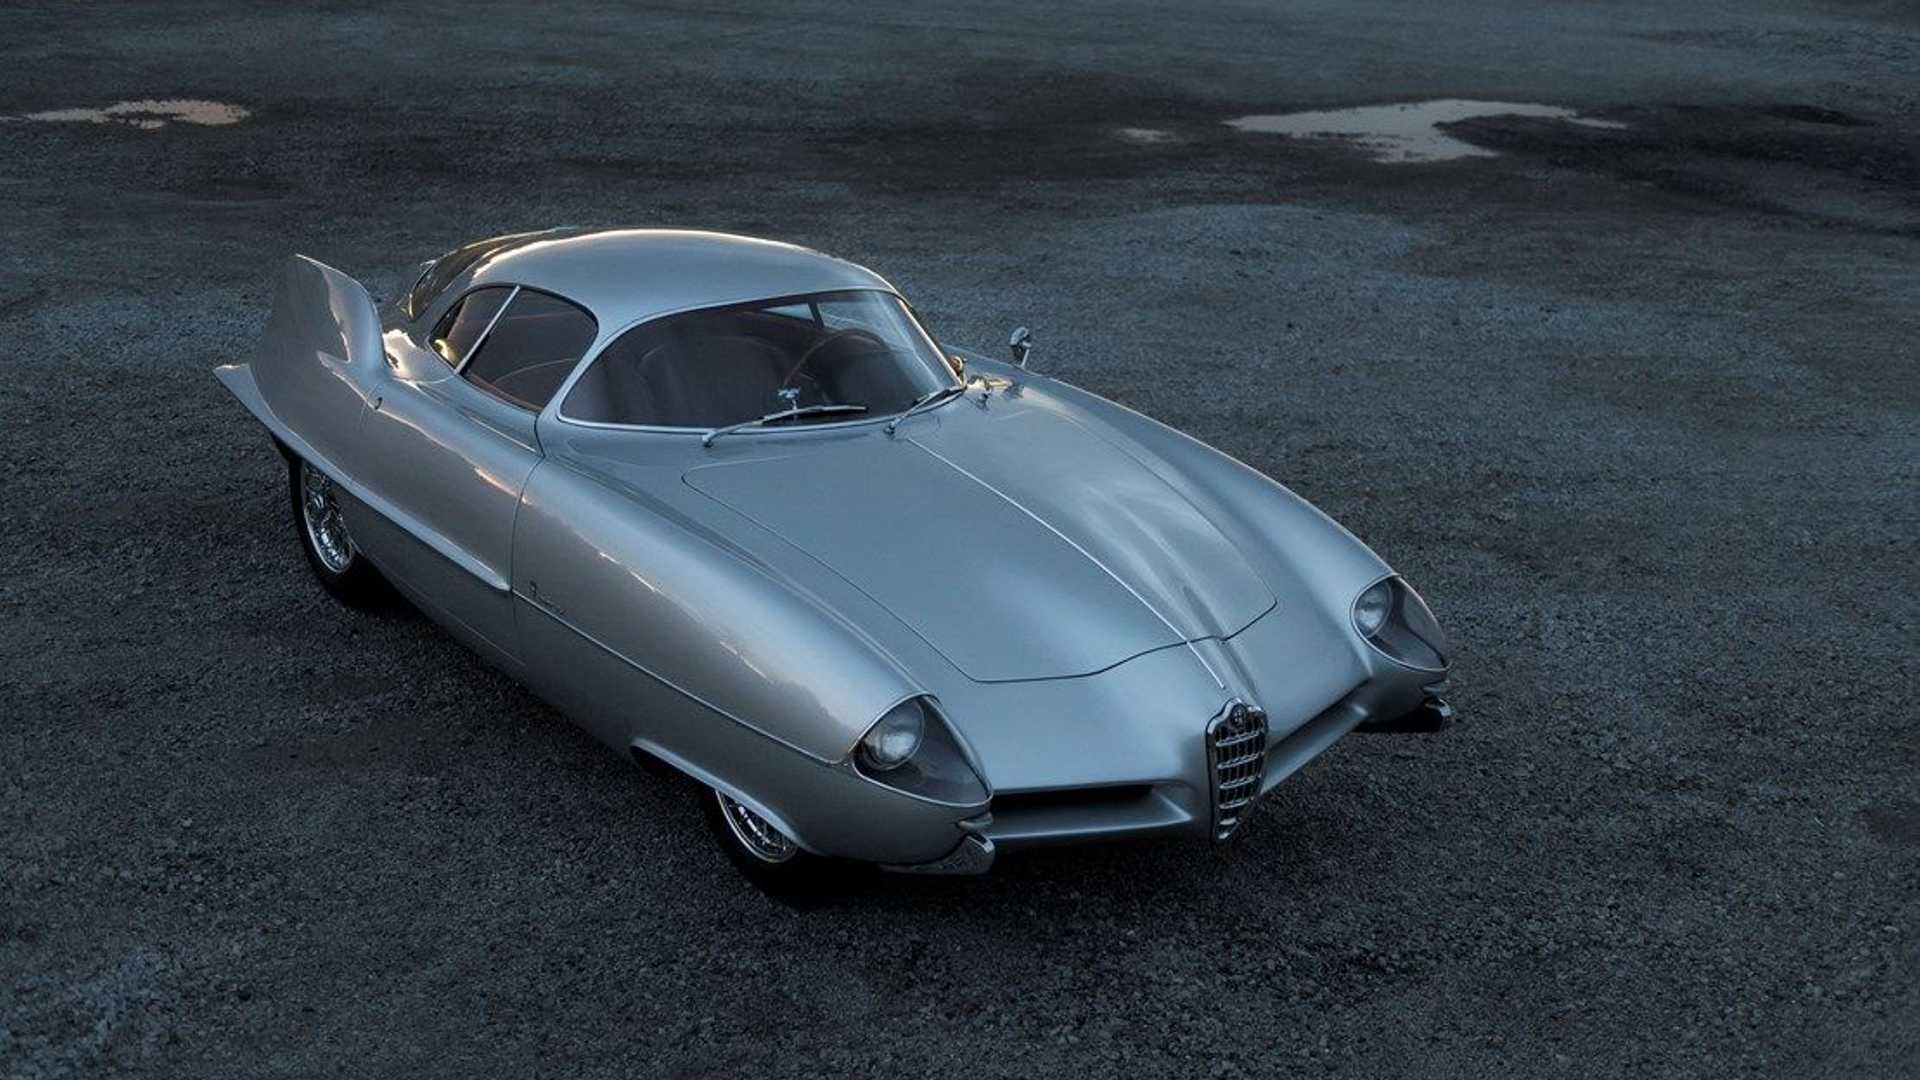 نمای سه چهارم جلو خودروی مفهومی آلفا رومئو / Alfa Romeo B.A.T. Concept Car با رنگ خاکستری